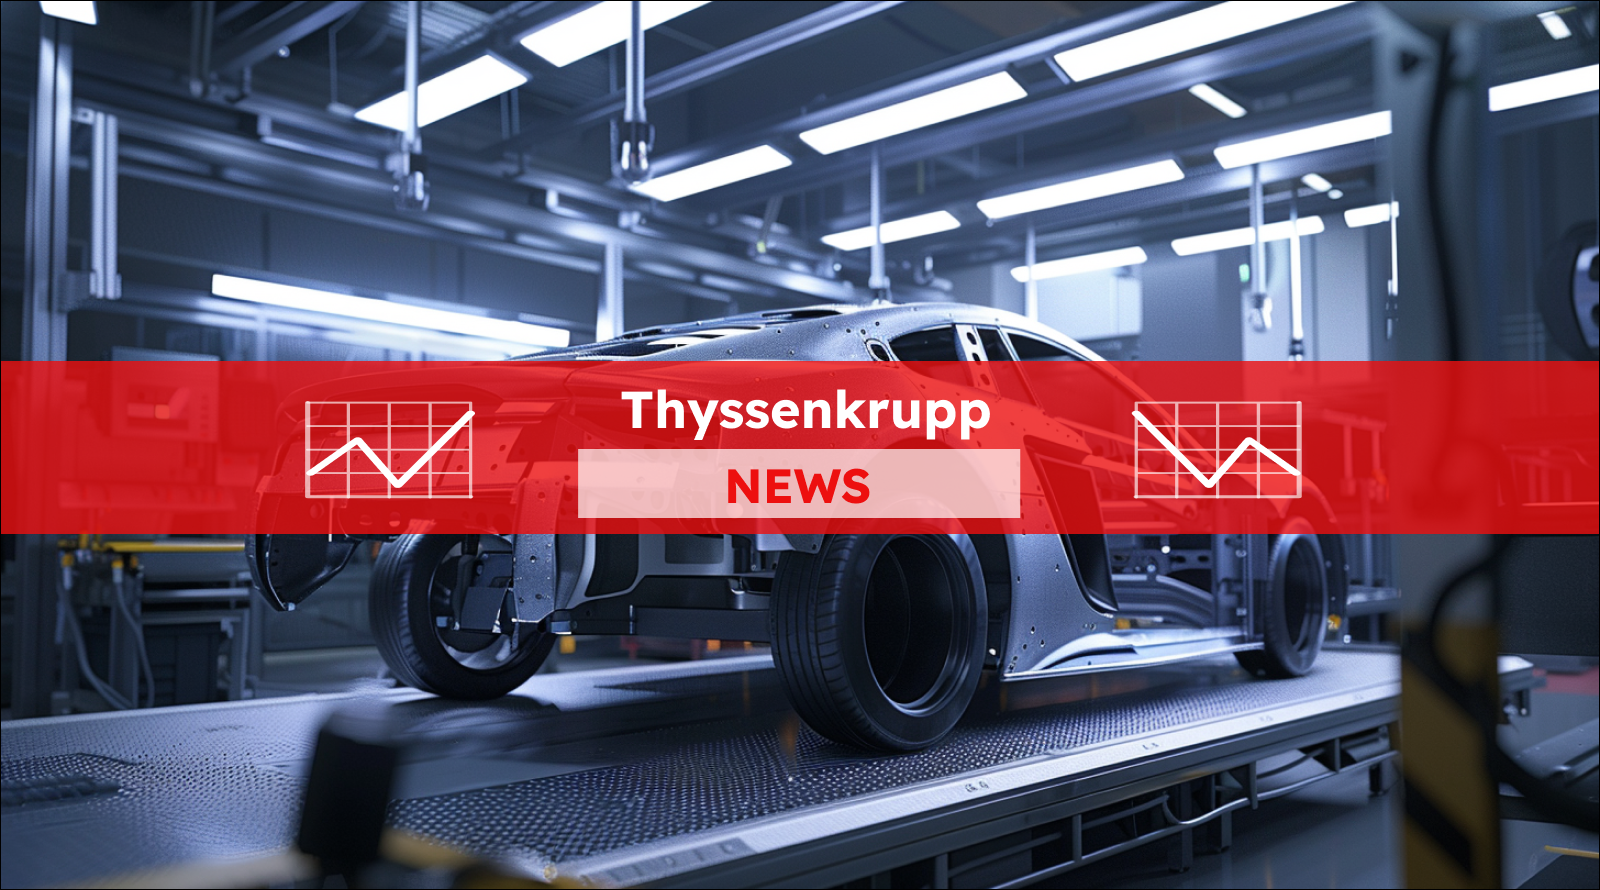 Ein Auto-Rohbau auf einer Montagelinie, mit einem Thyssenkrupp NEWS Banner.